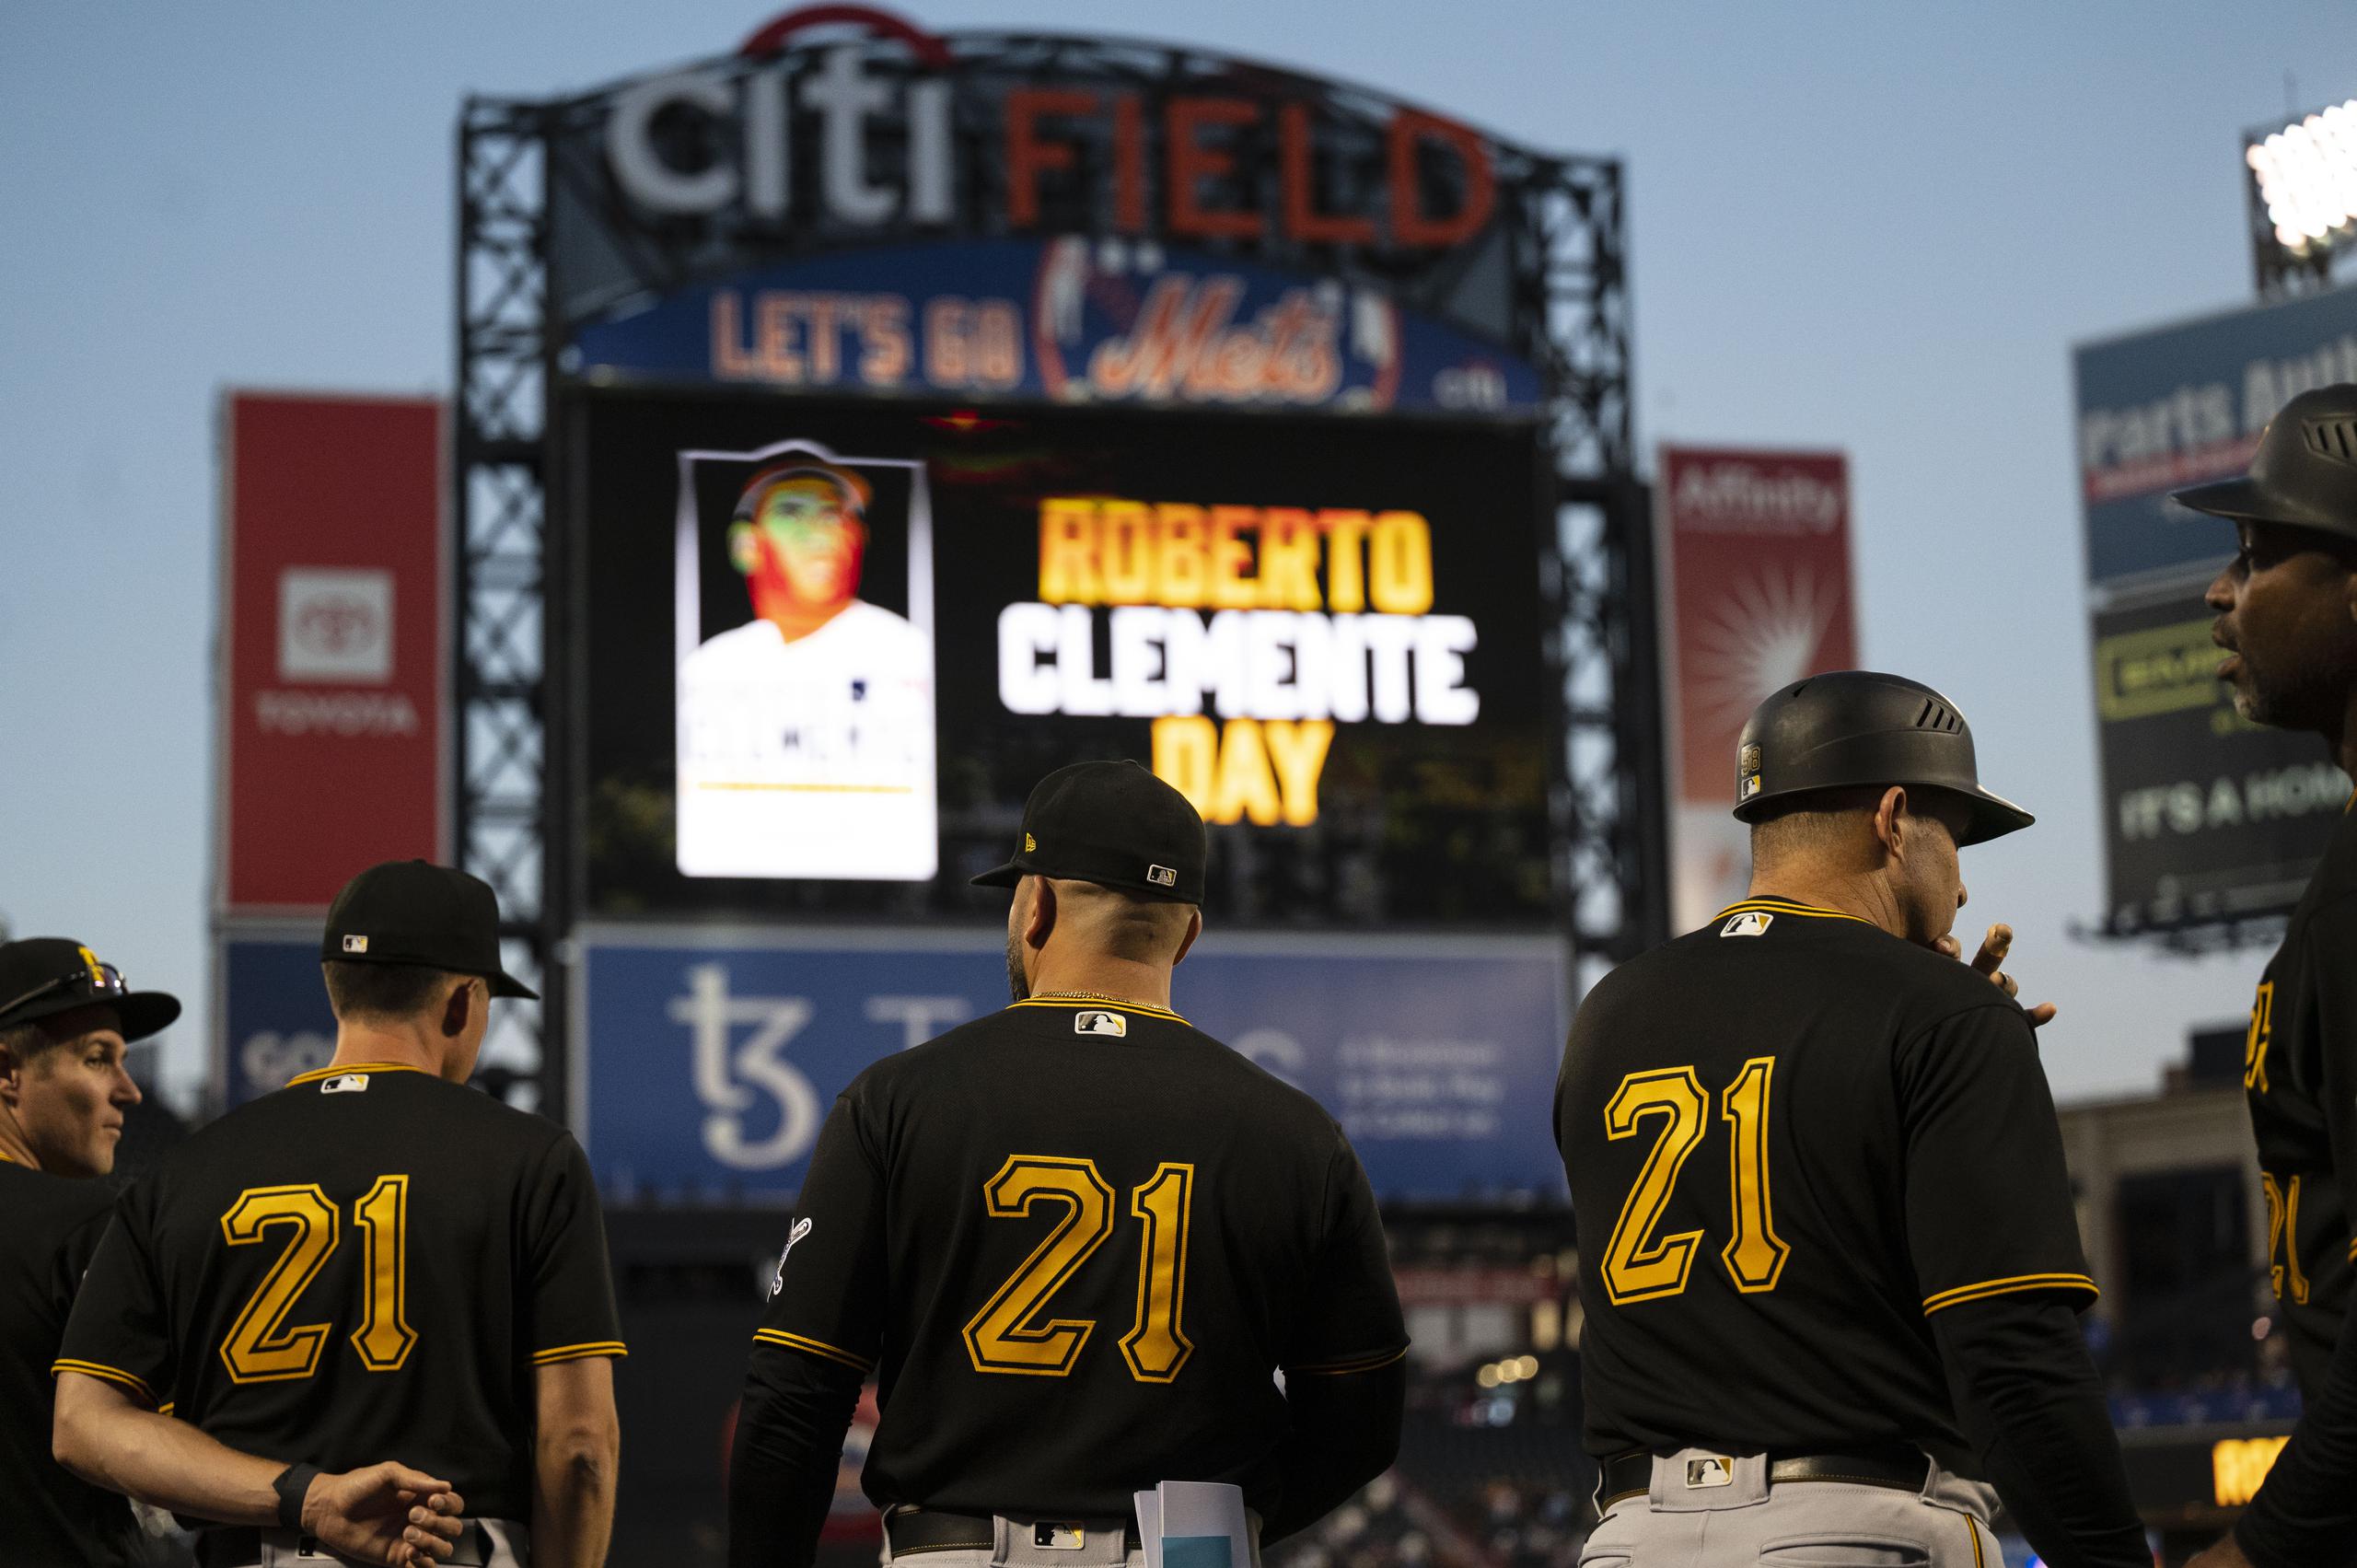 El 15 de septiembre será el Día de Roberto Clemente en MLB. Ese día los Yankees de Nueva York visitan a los Pirates de Pittsburgh.